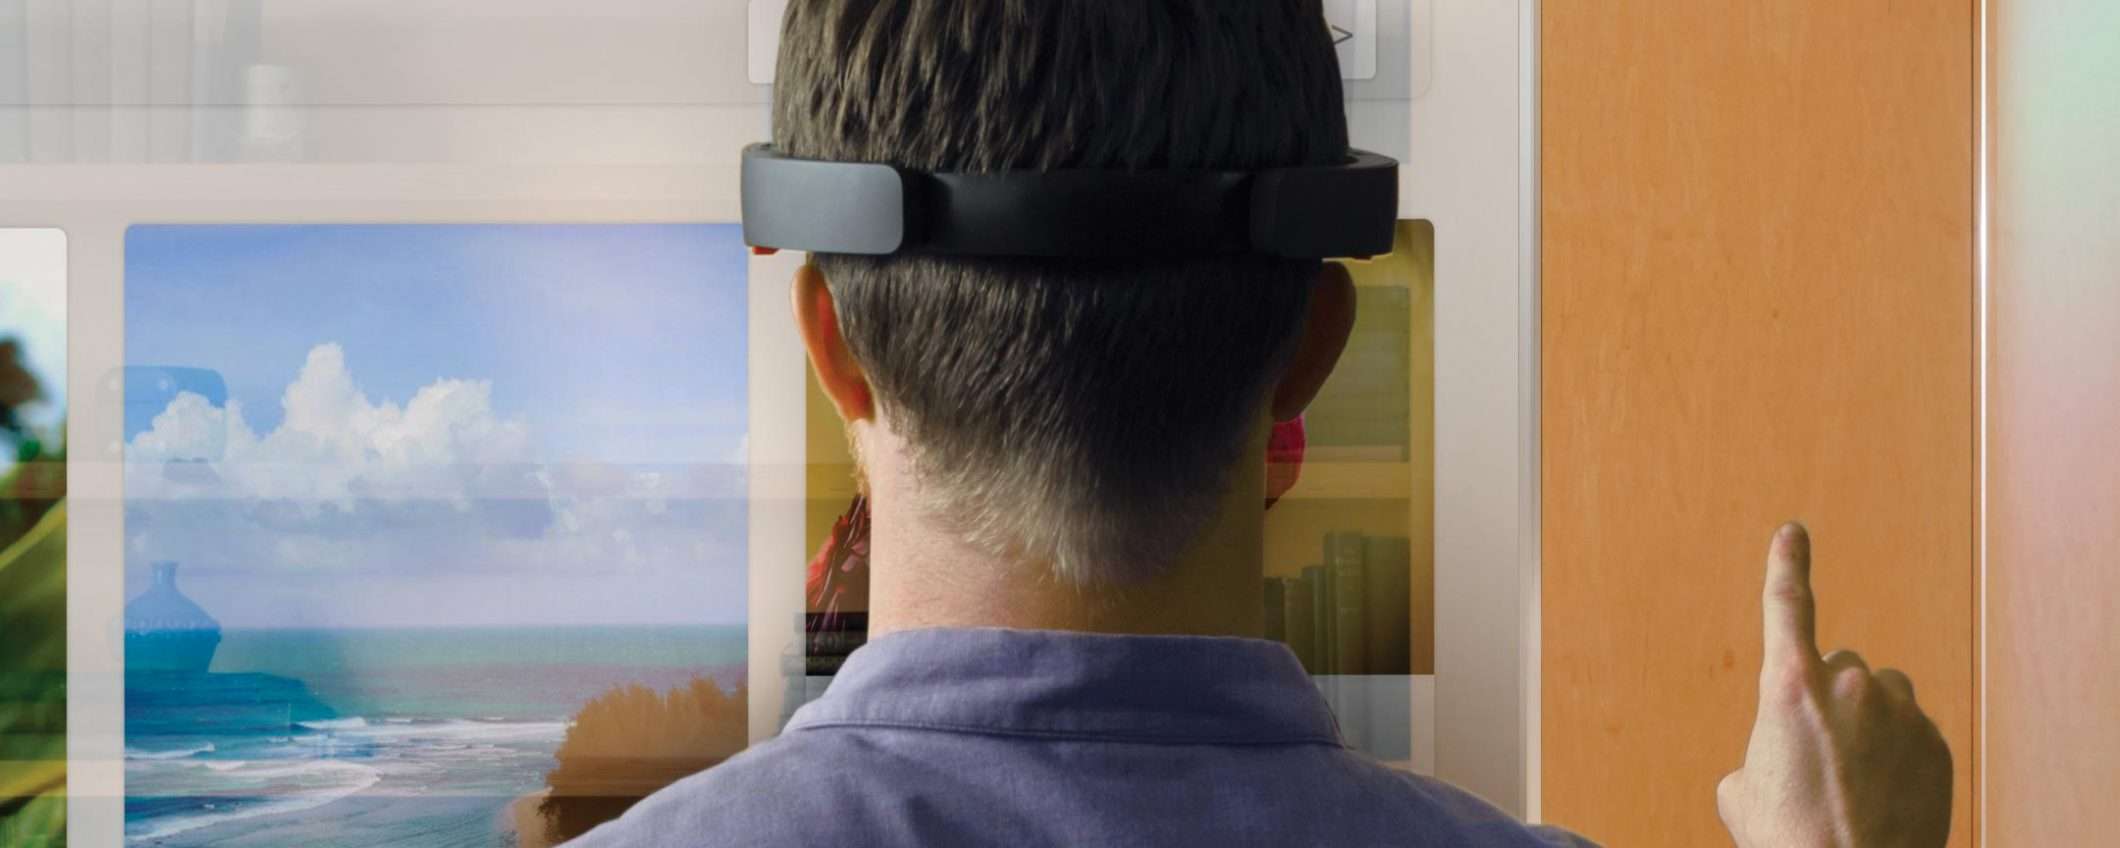 HoloLens 2: fuori Intel e dentro Qualcomm?